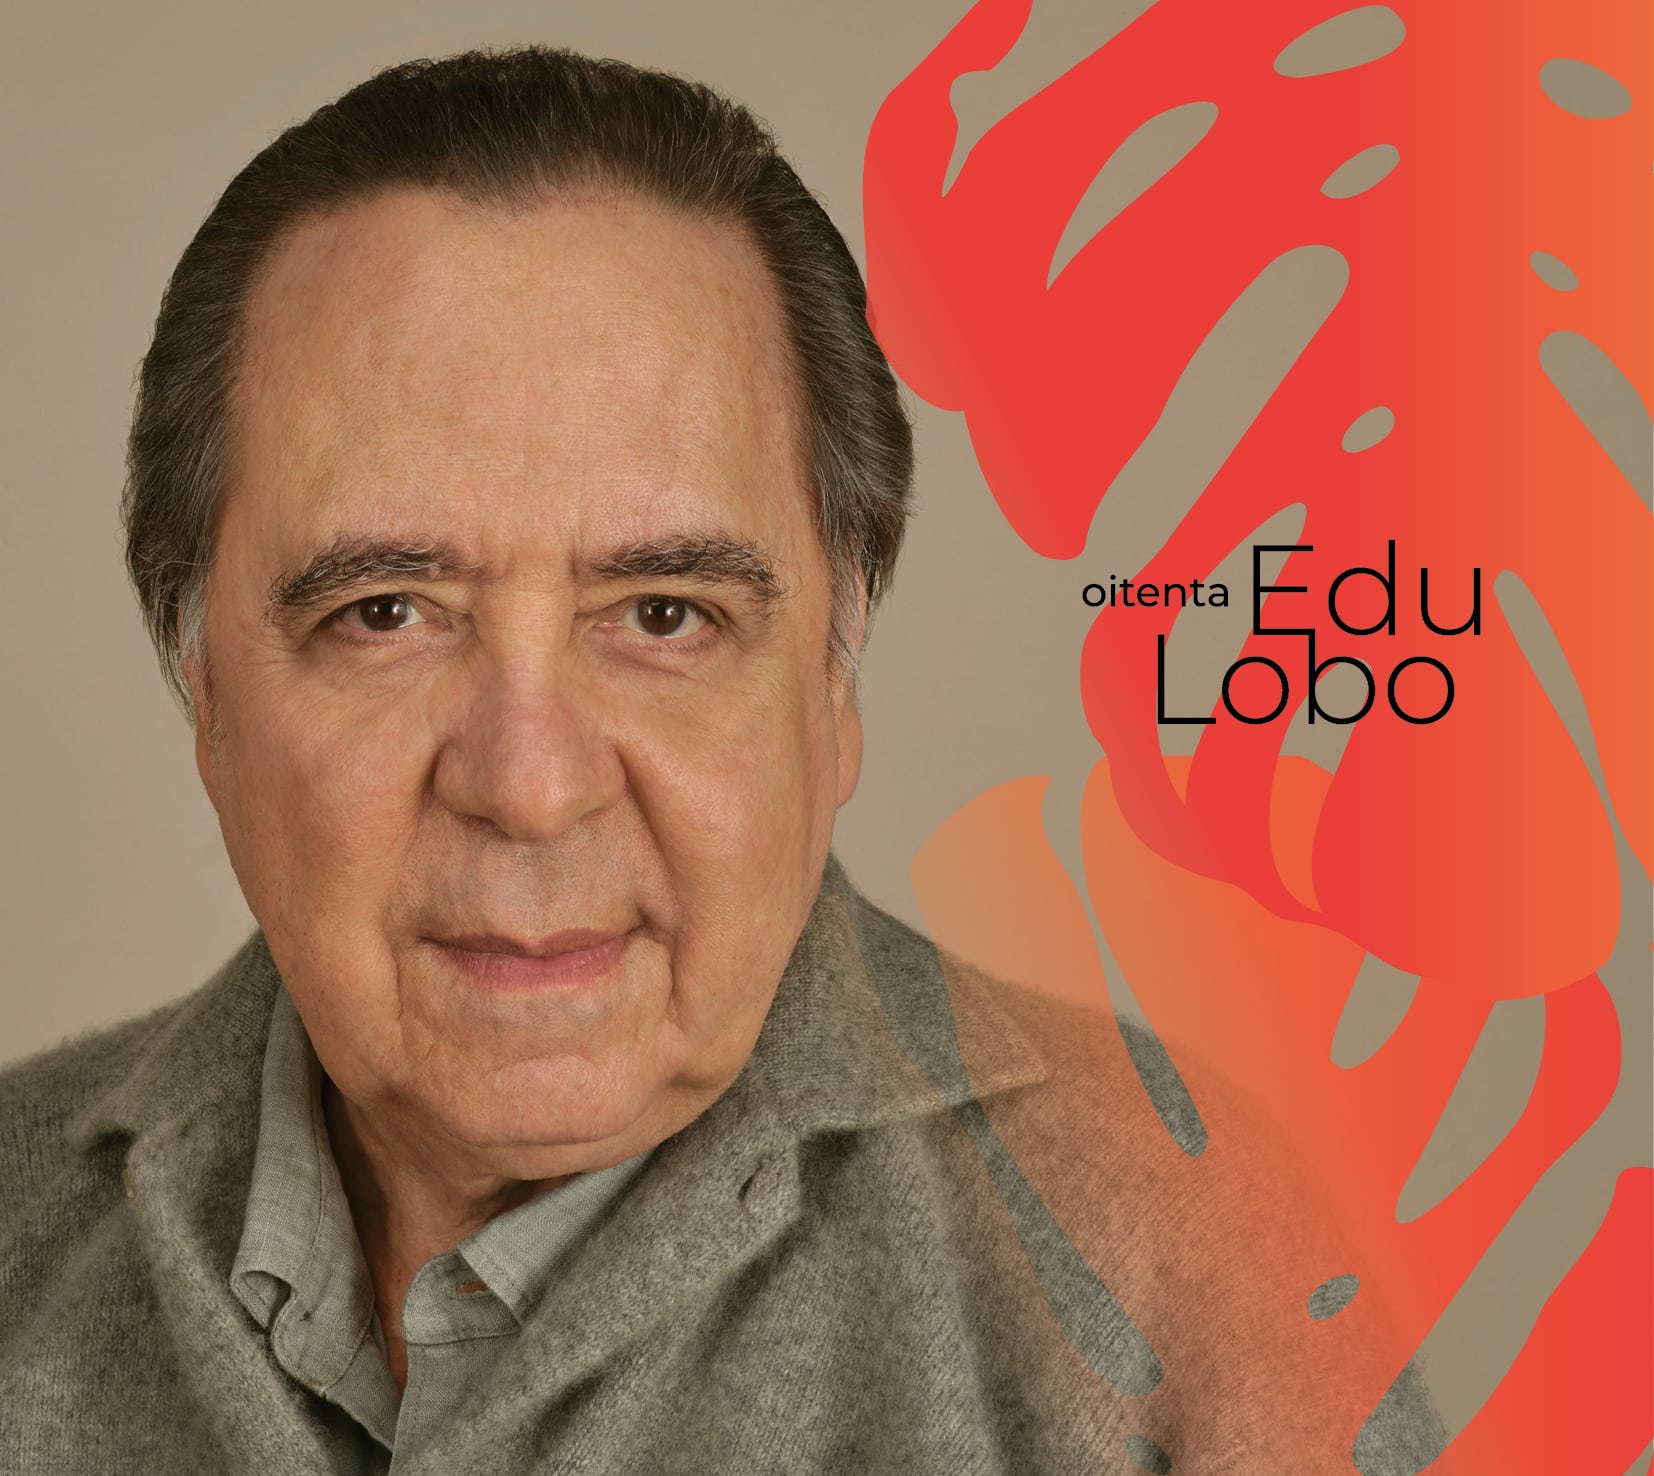 revistaprosaversoearte.com - 'Edu Lobo Oitenta', álbum duplo comemorativo dos oitenta anos do icônico compositor